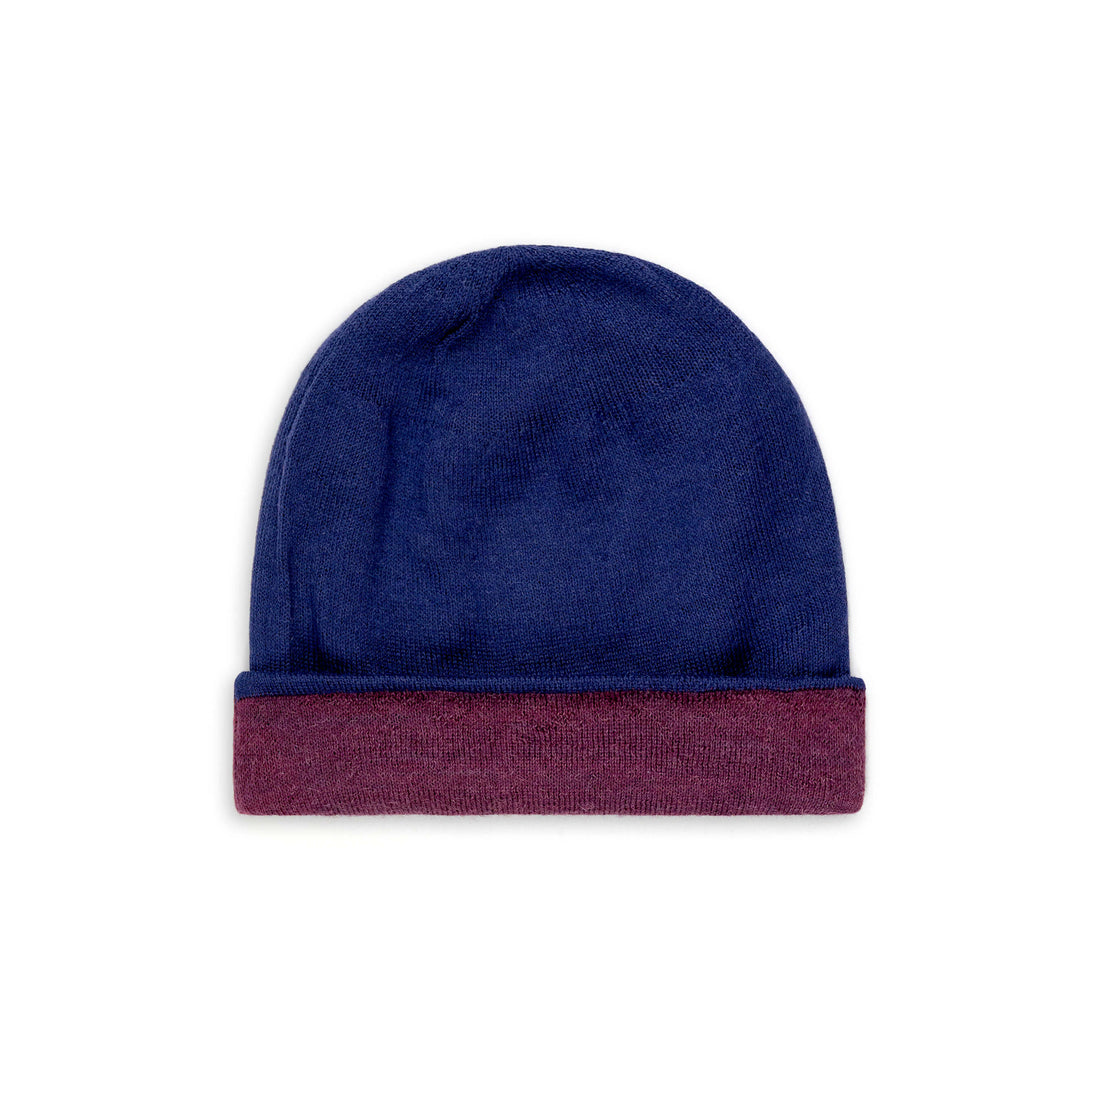 Alpaka Mütze Duocolor für Damen und Herren von Alpakin in blau und purpur